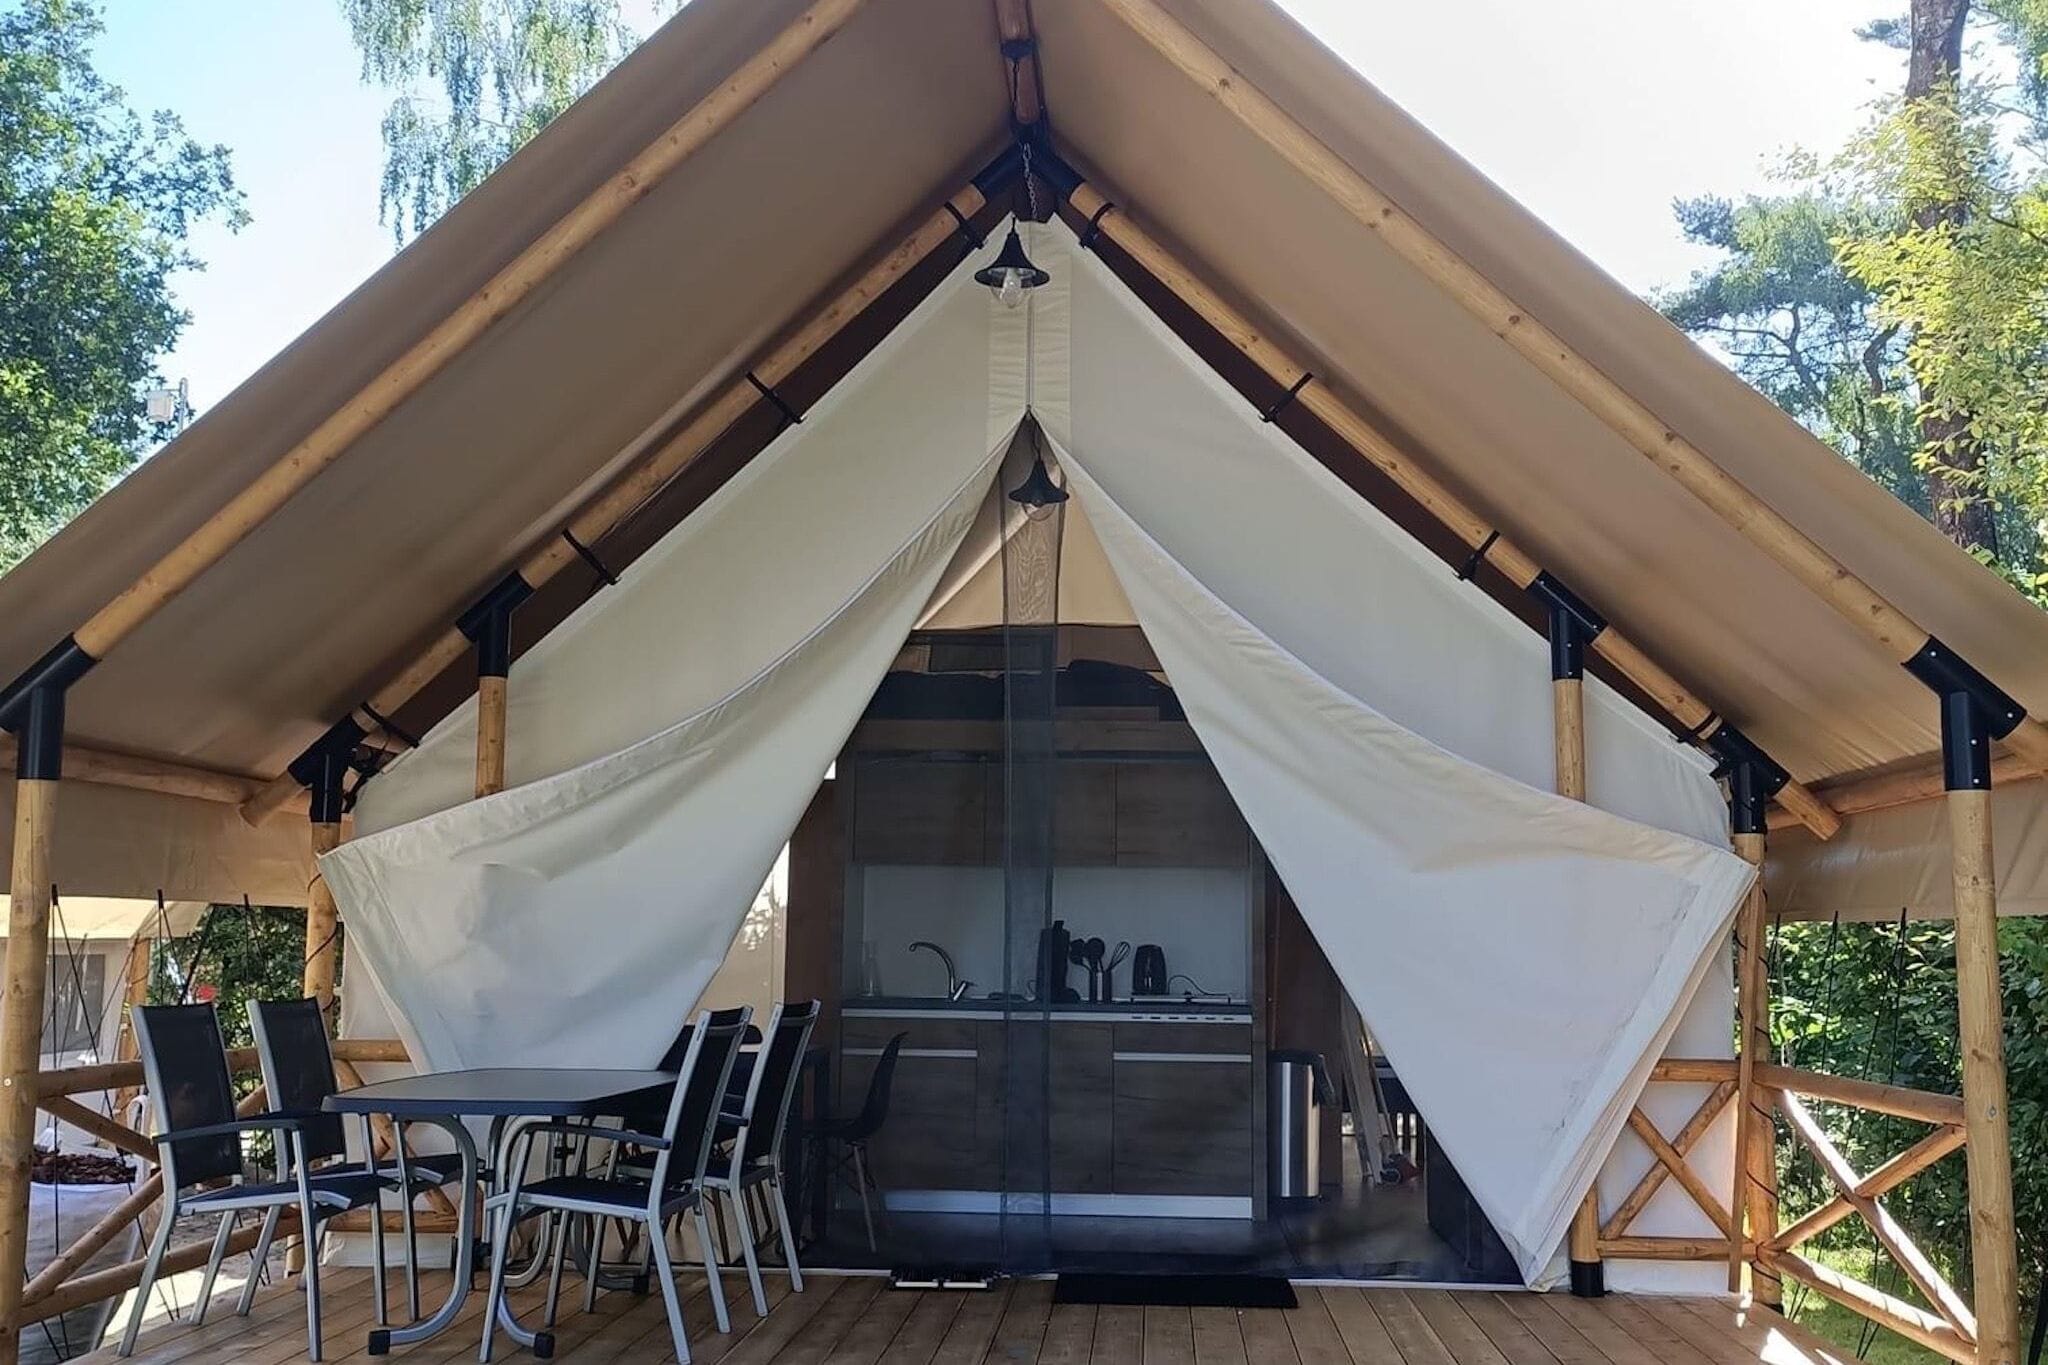 Comfortable tent with veranda, 20 km from Utrecht